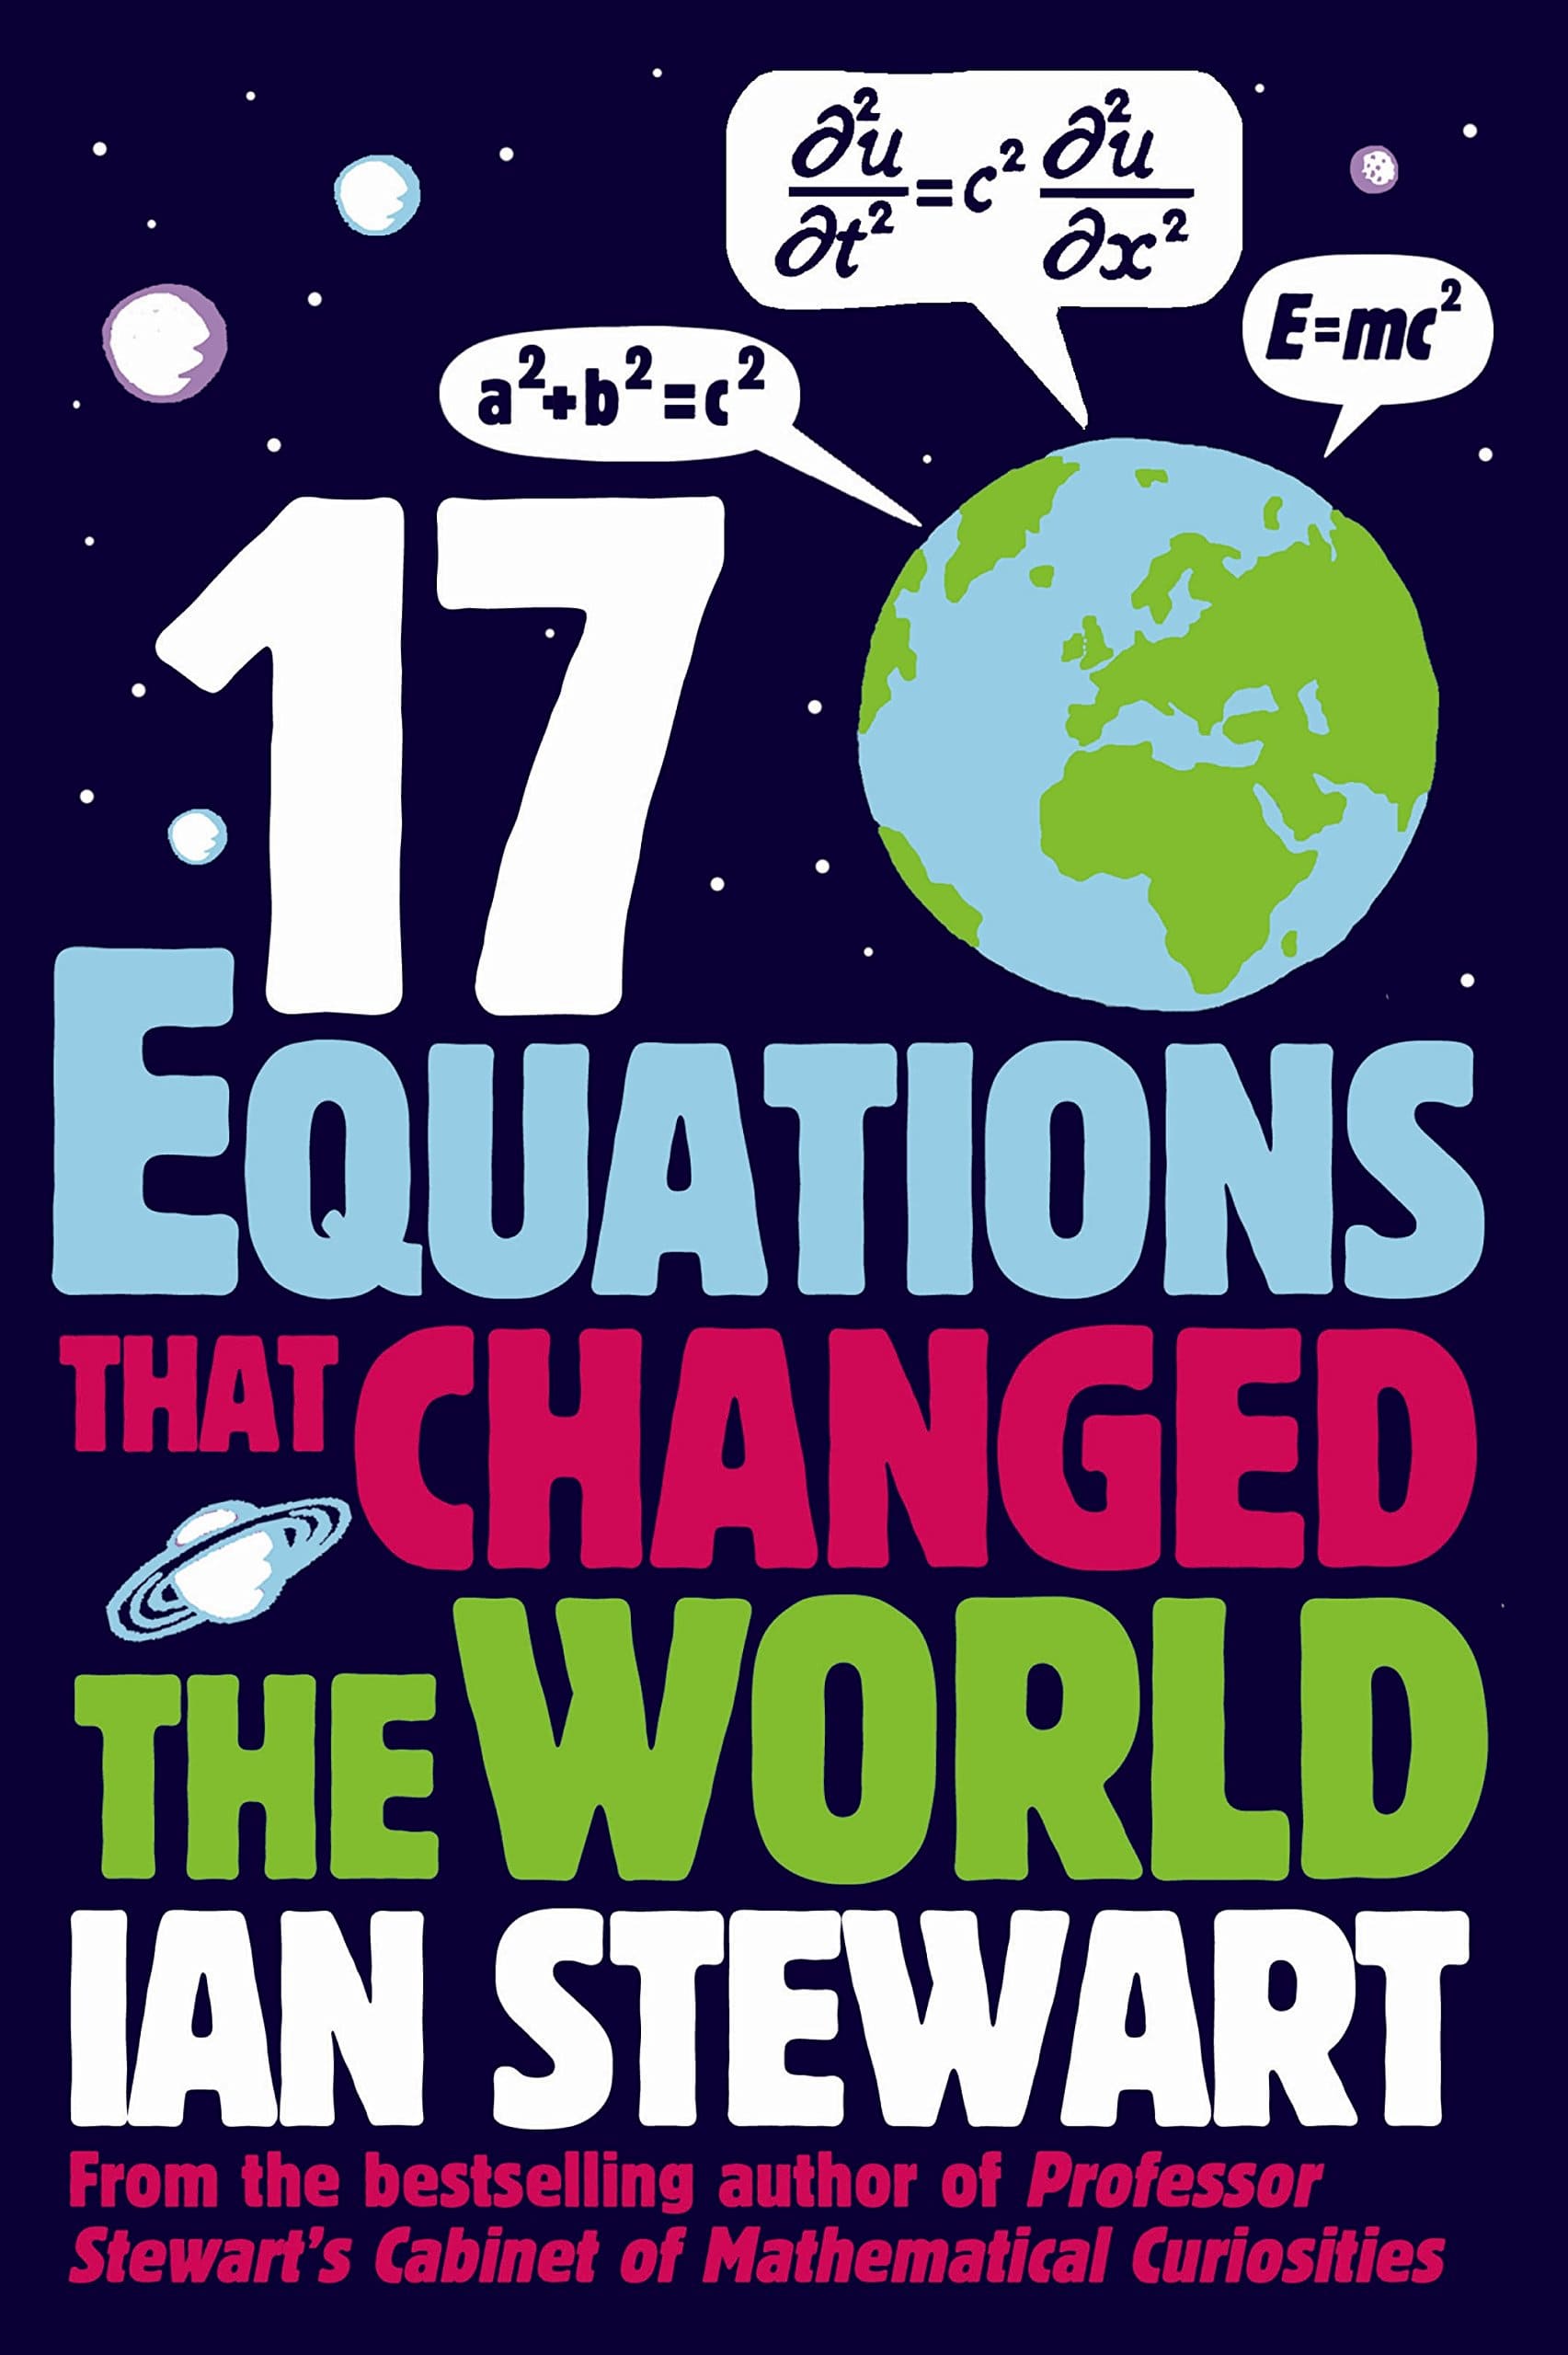 세상을 바꾼 17가지 방정식 VIDEO:17 equations that changed the world